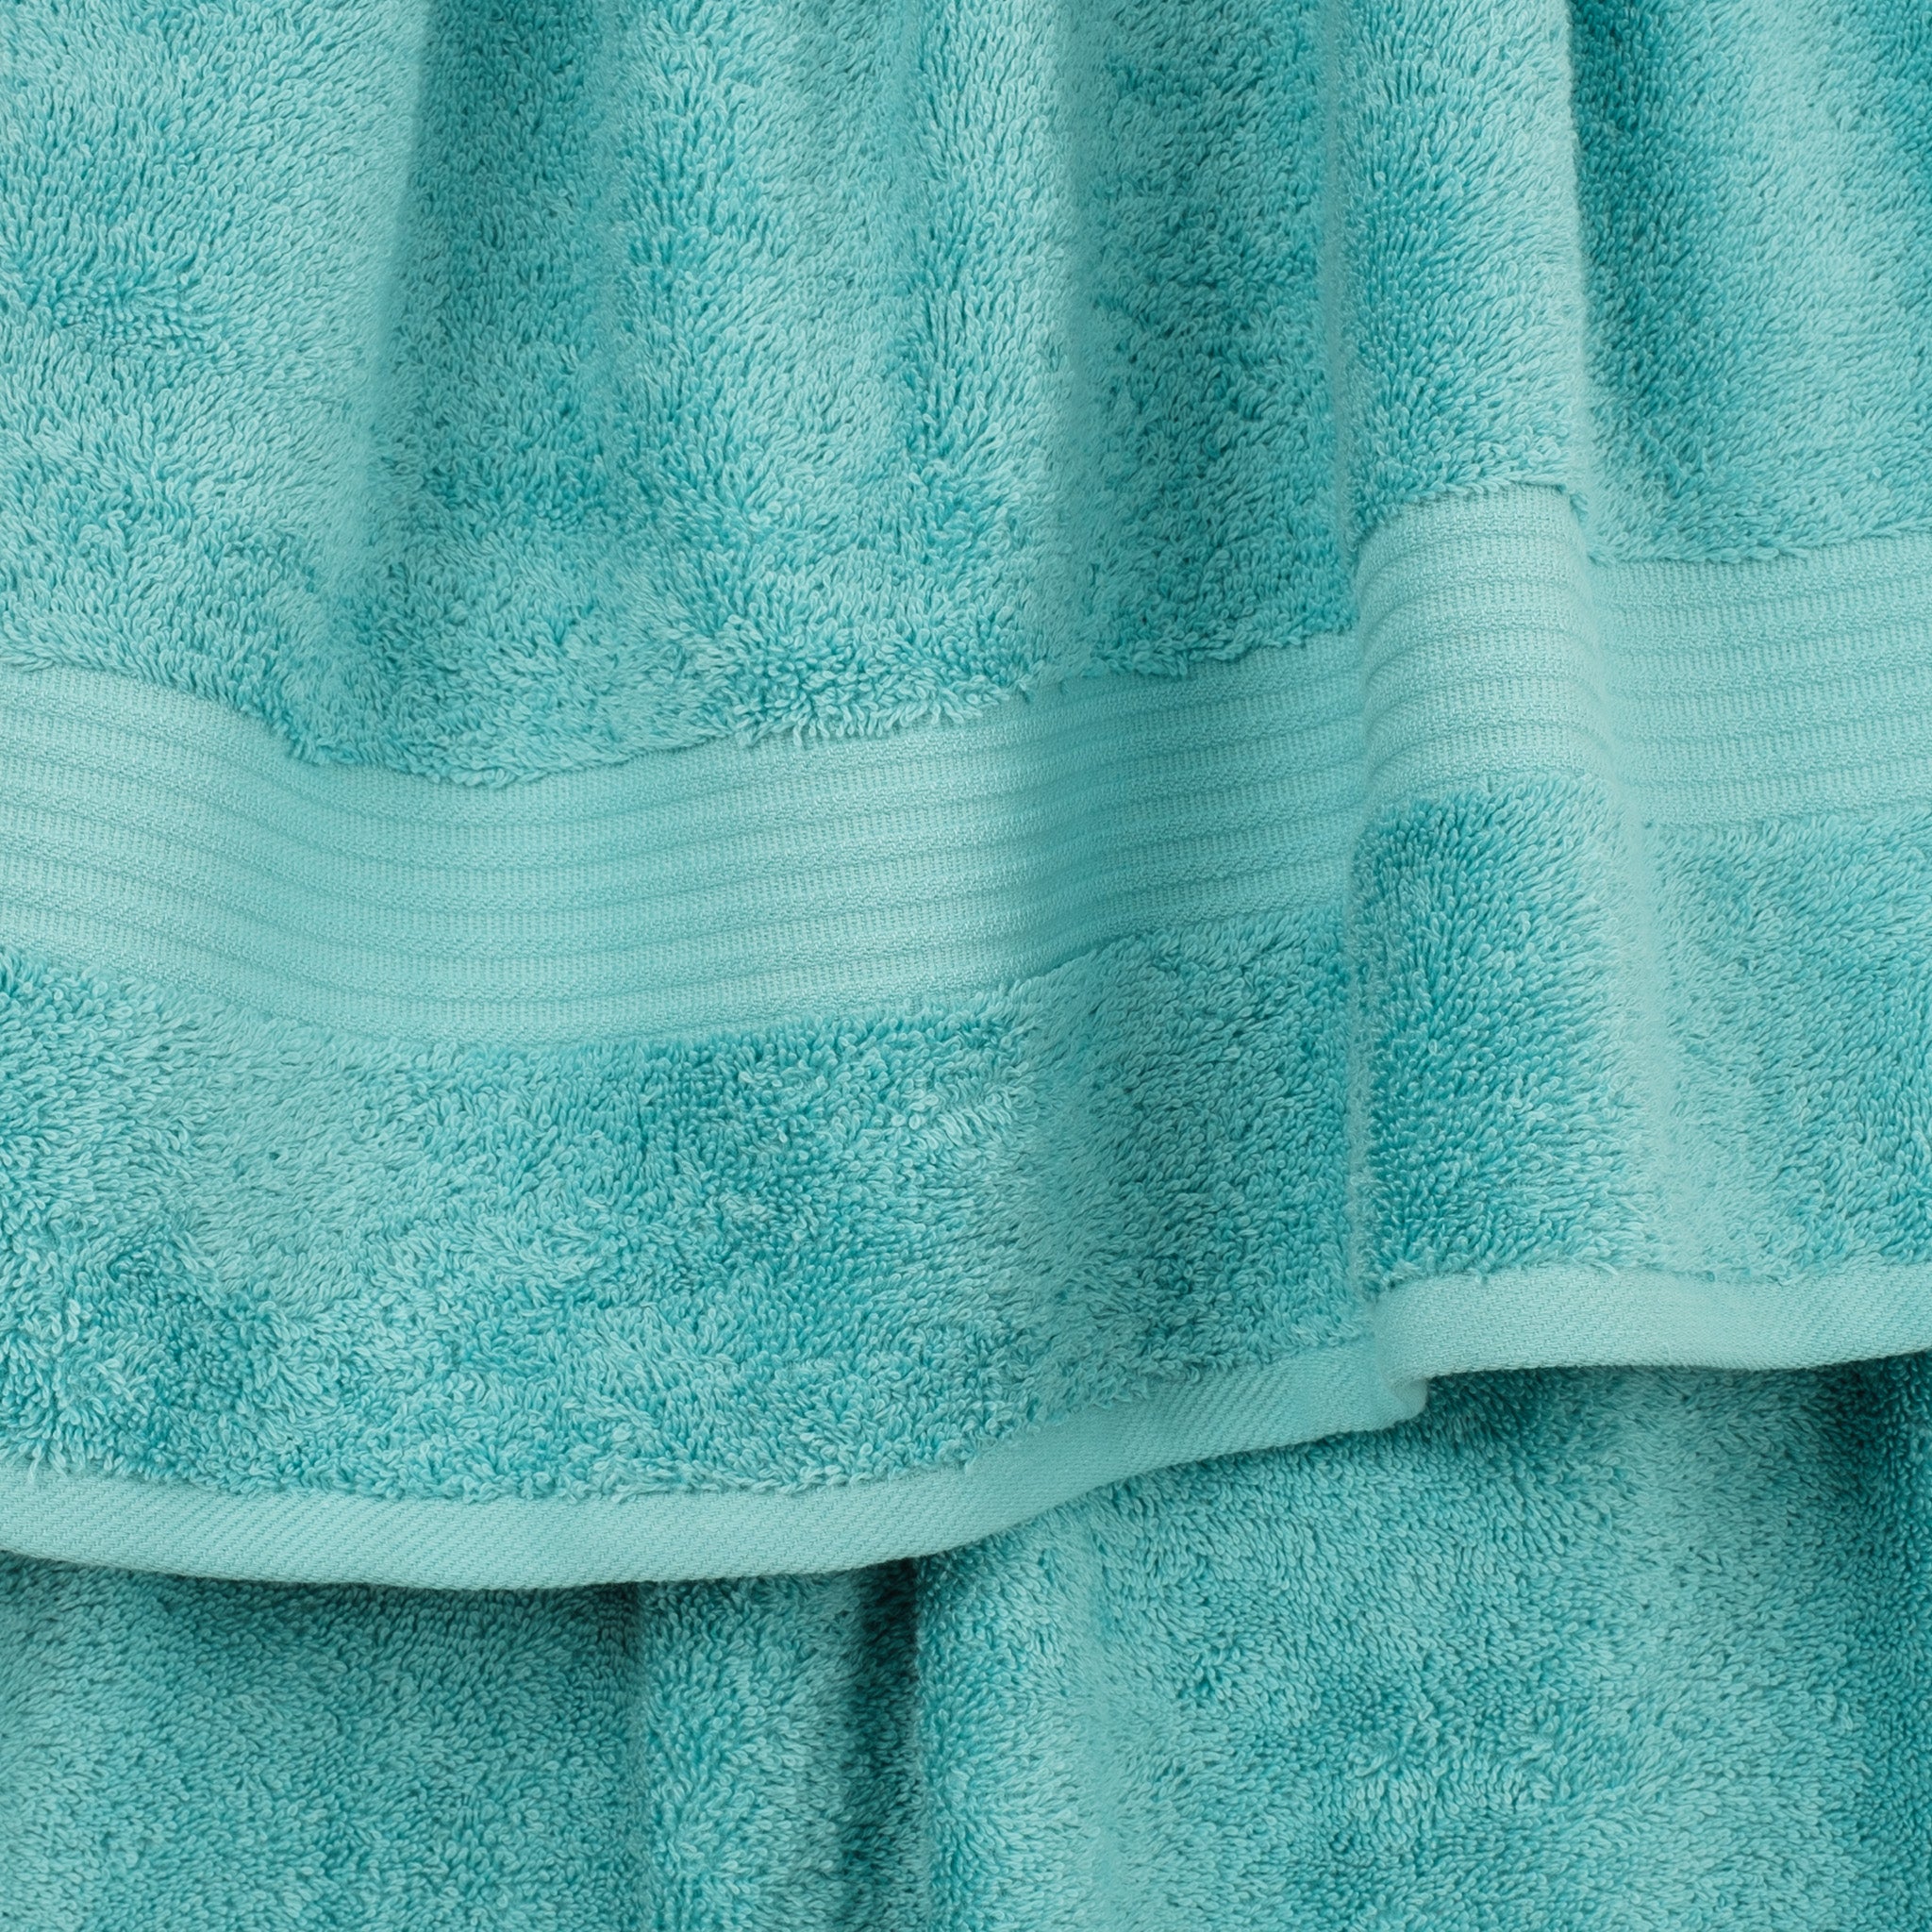 American Soft Linen Bekos 100% Cotton Turkish Towels 6 Piece Bath Towel Set -turquoise-blue-03